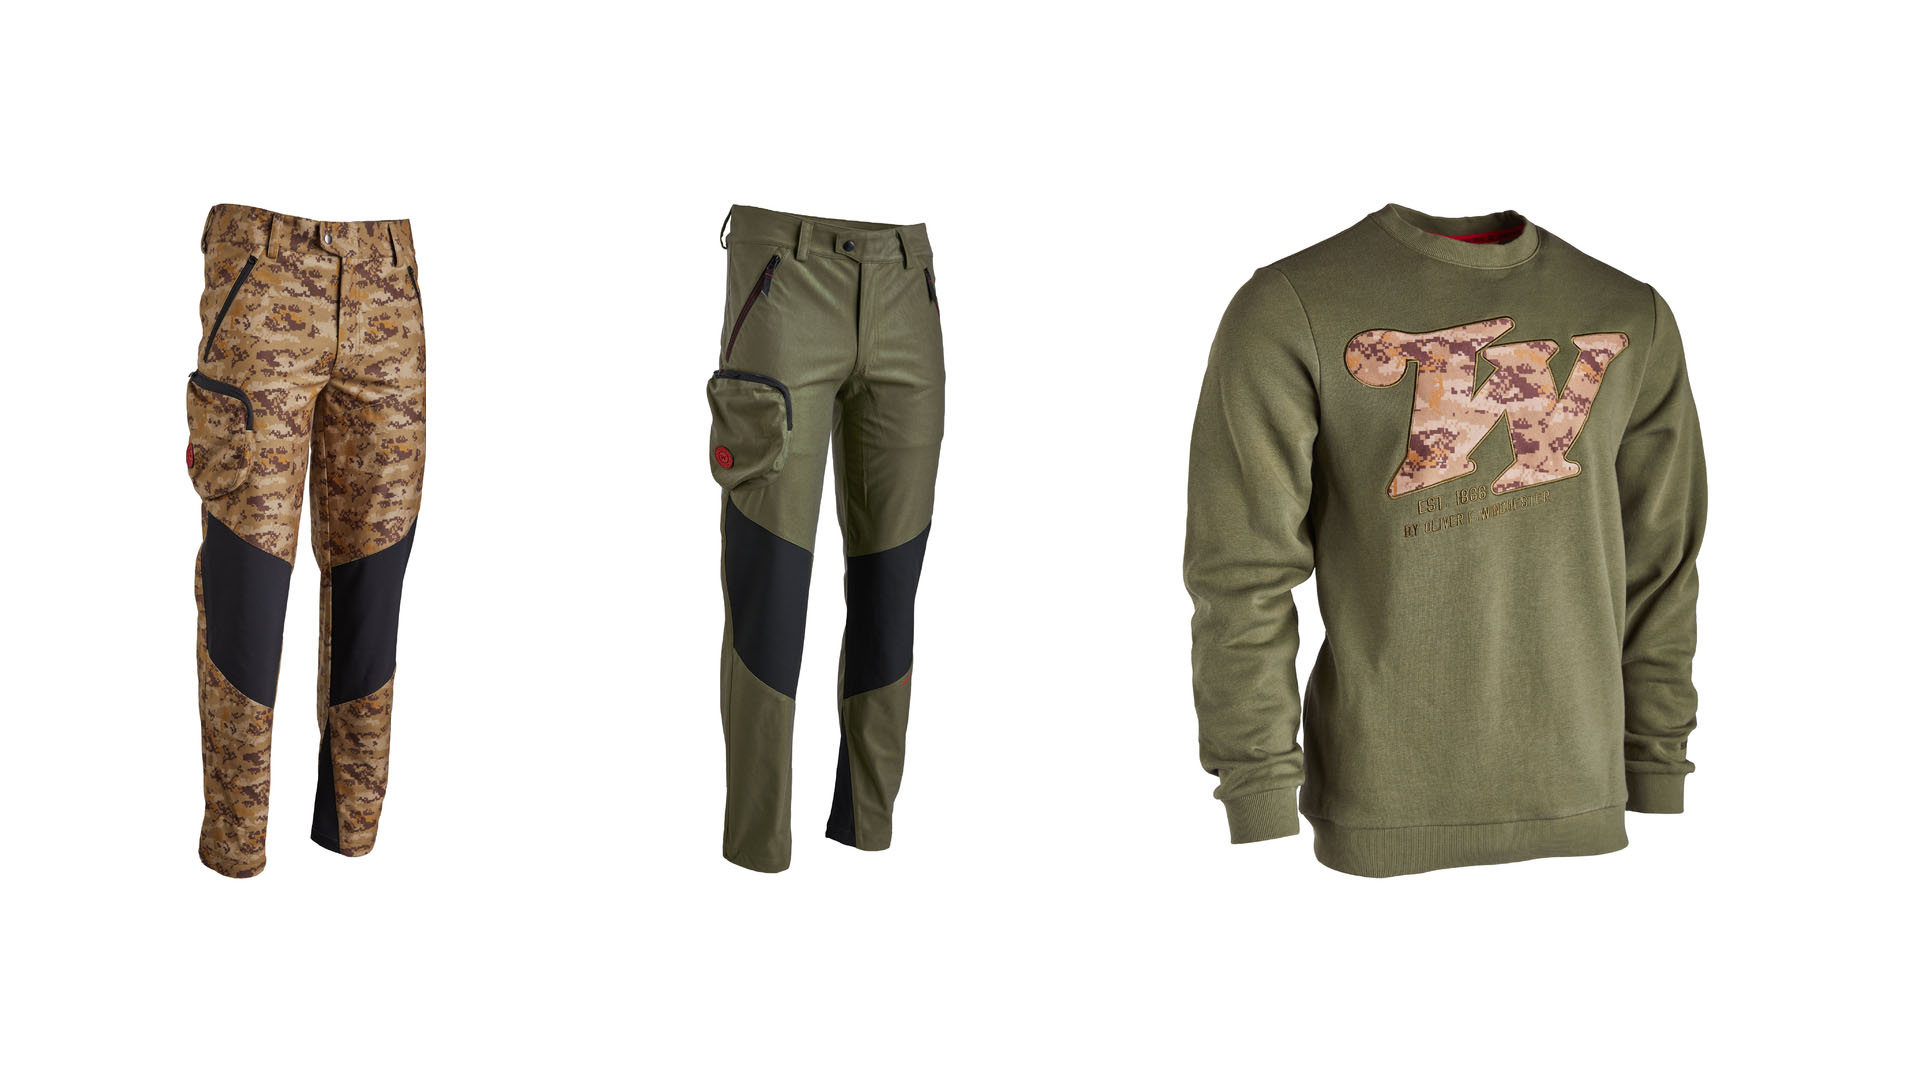 Alla giacca Huntsville si possono abbinare i pantaloni Kiowa, disponibili nei colori Digi camo e verde (khaki). La collezione comprende inoltre felpe (con e senza cappuccio), t-shirt e cappellini